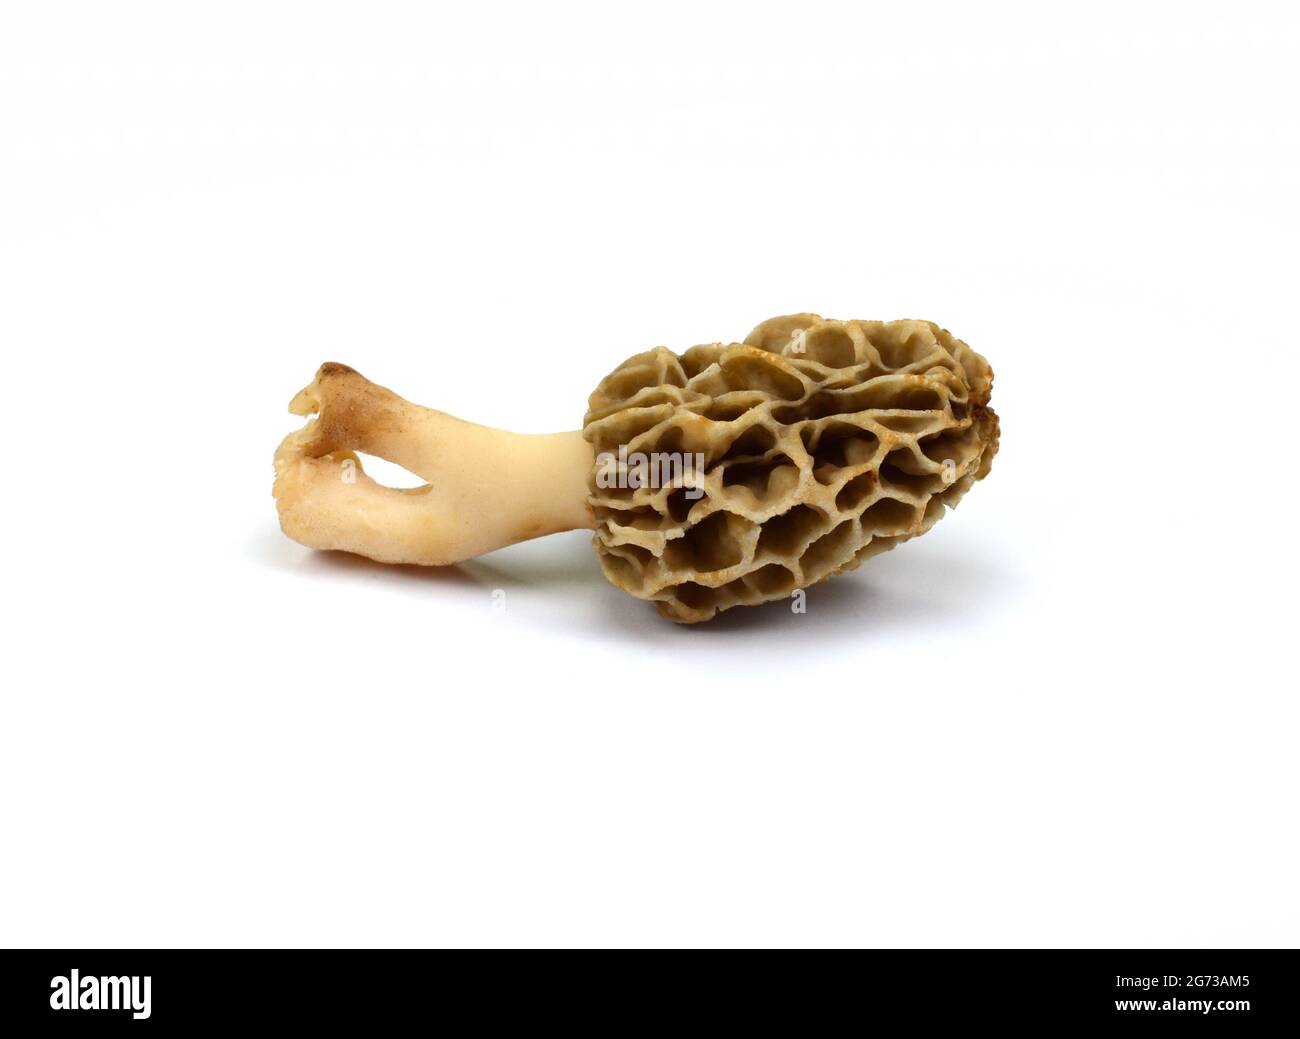 Morel mushroom, its scientific name is Morchella esculenta isolated on white. Stock Photo